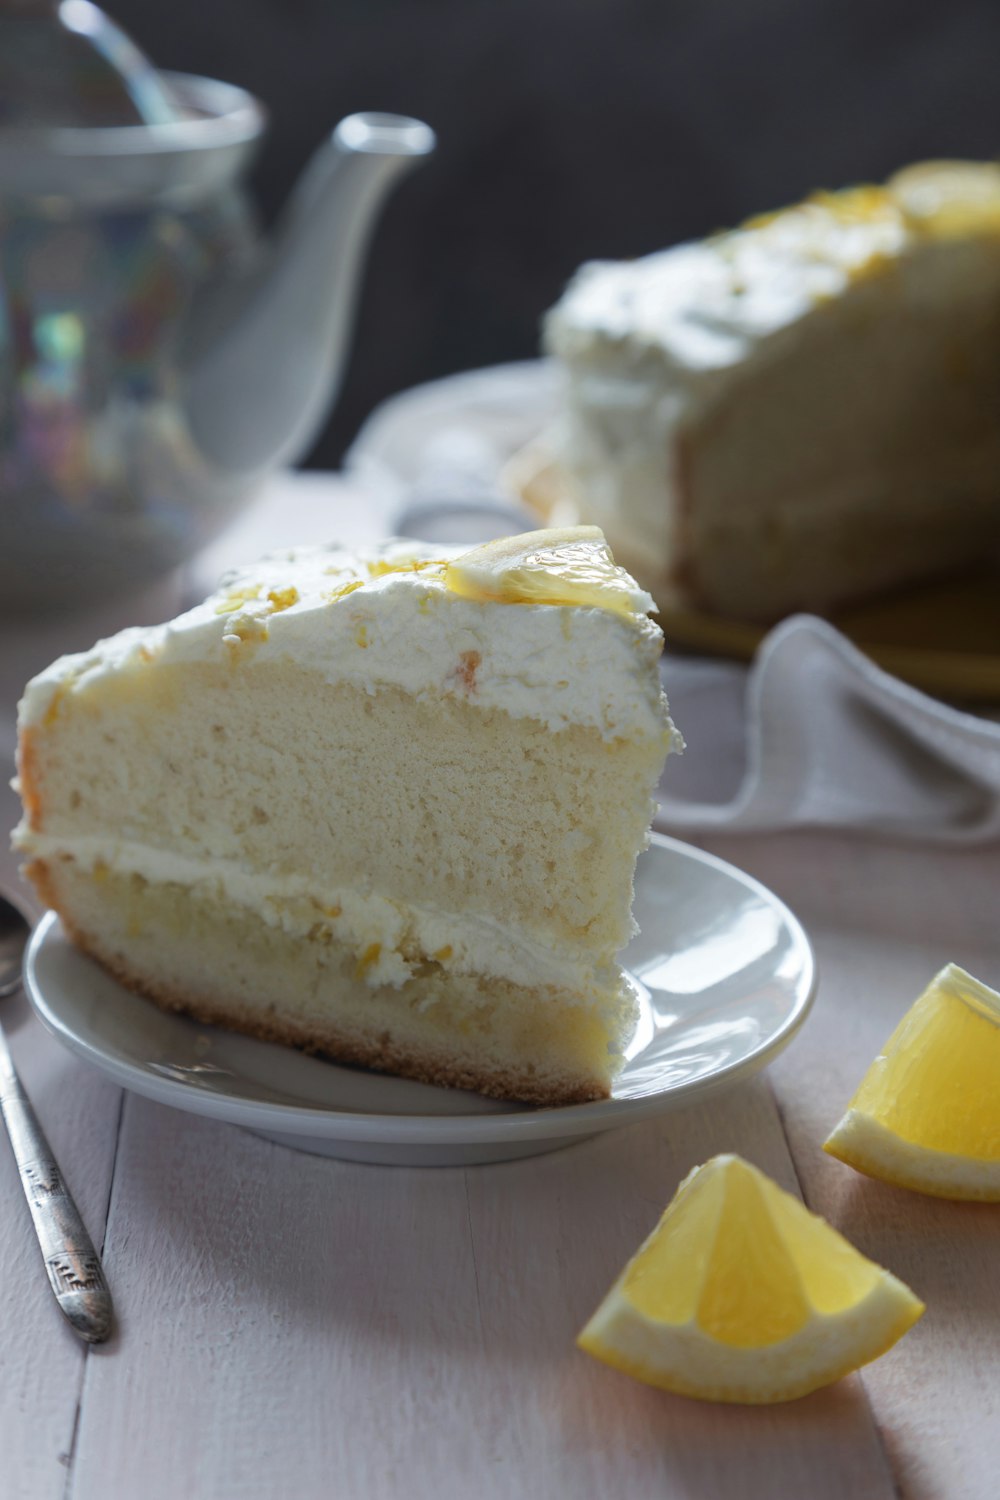 레몬 웨지가있는 접시에 케이크 한 조각